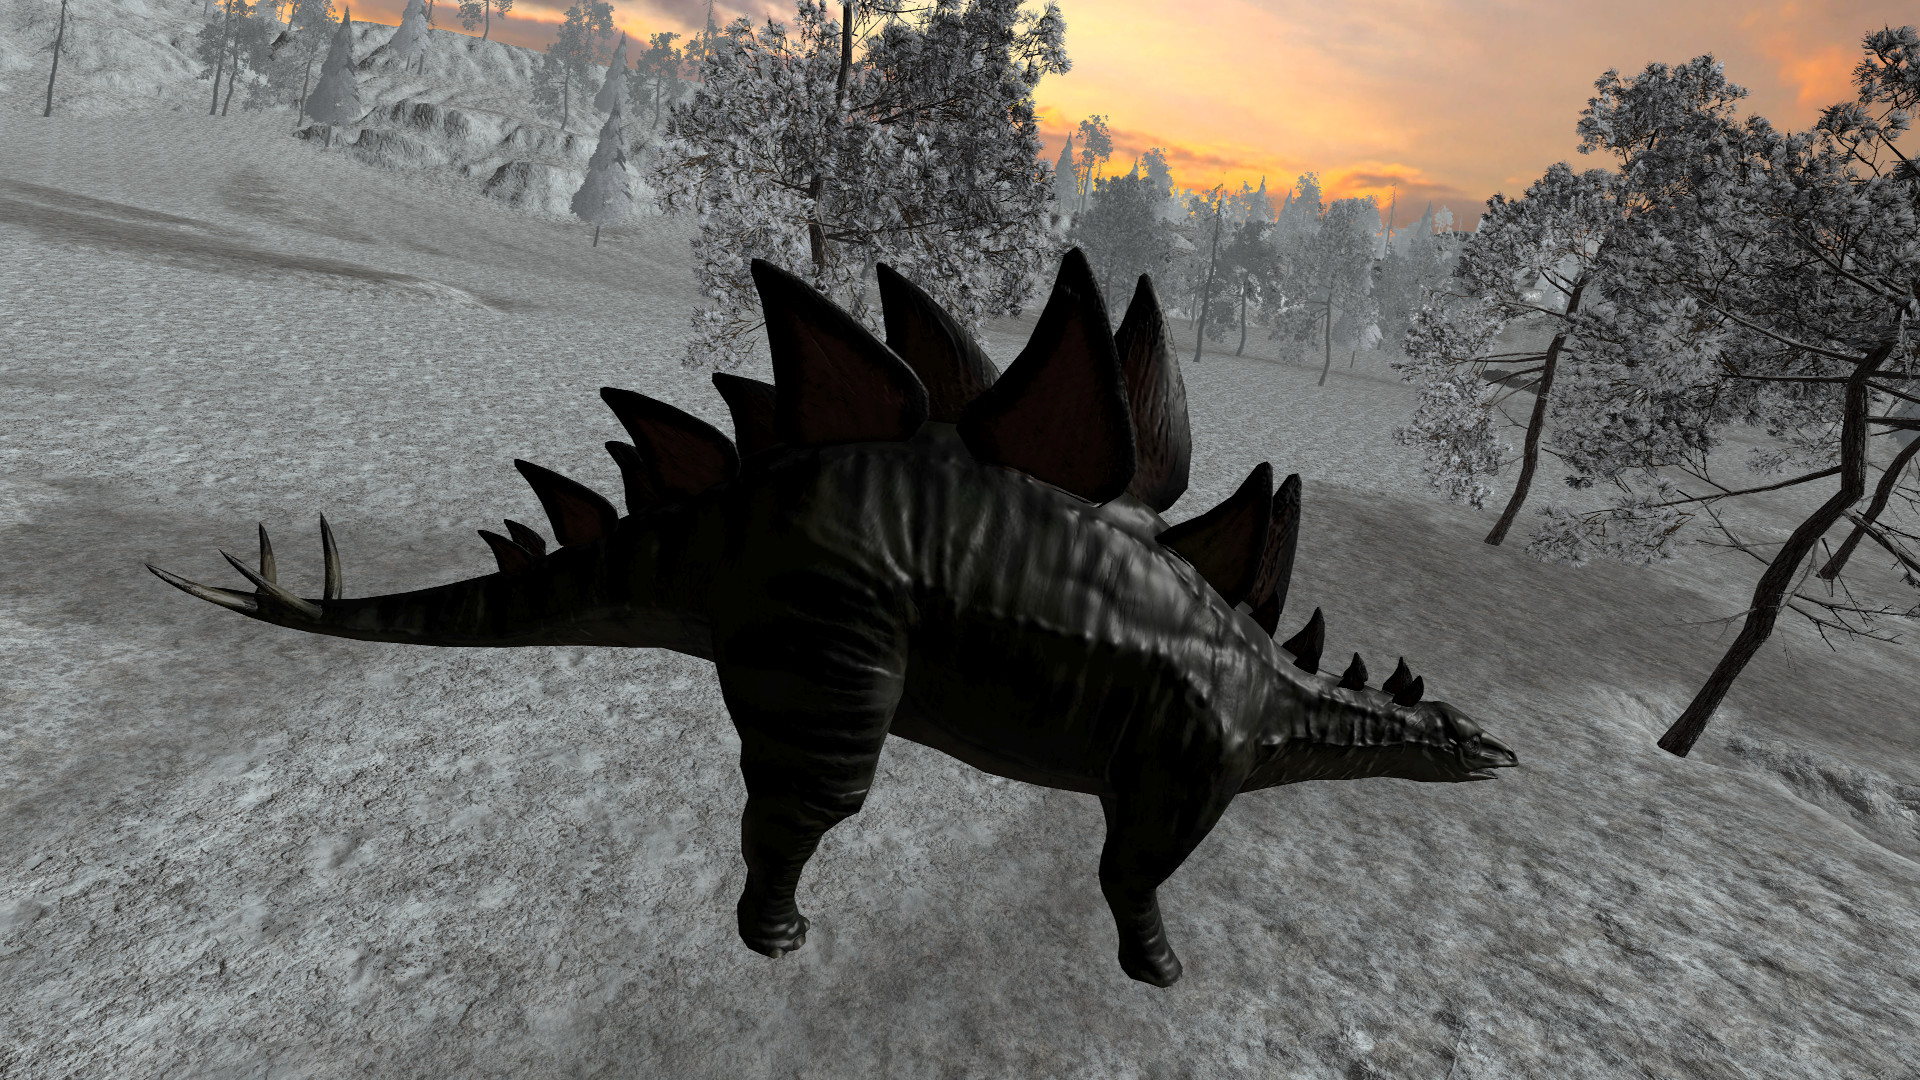 [$ 0.32] Dinosaur Hunt - Stegosaurus Expansion Pack DLC Steam CD Key